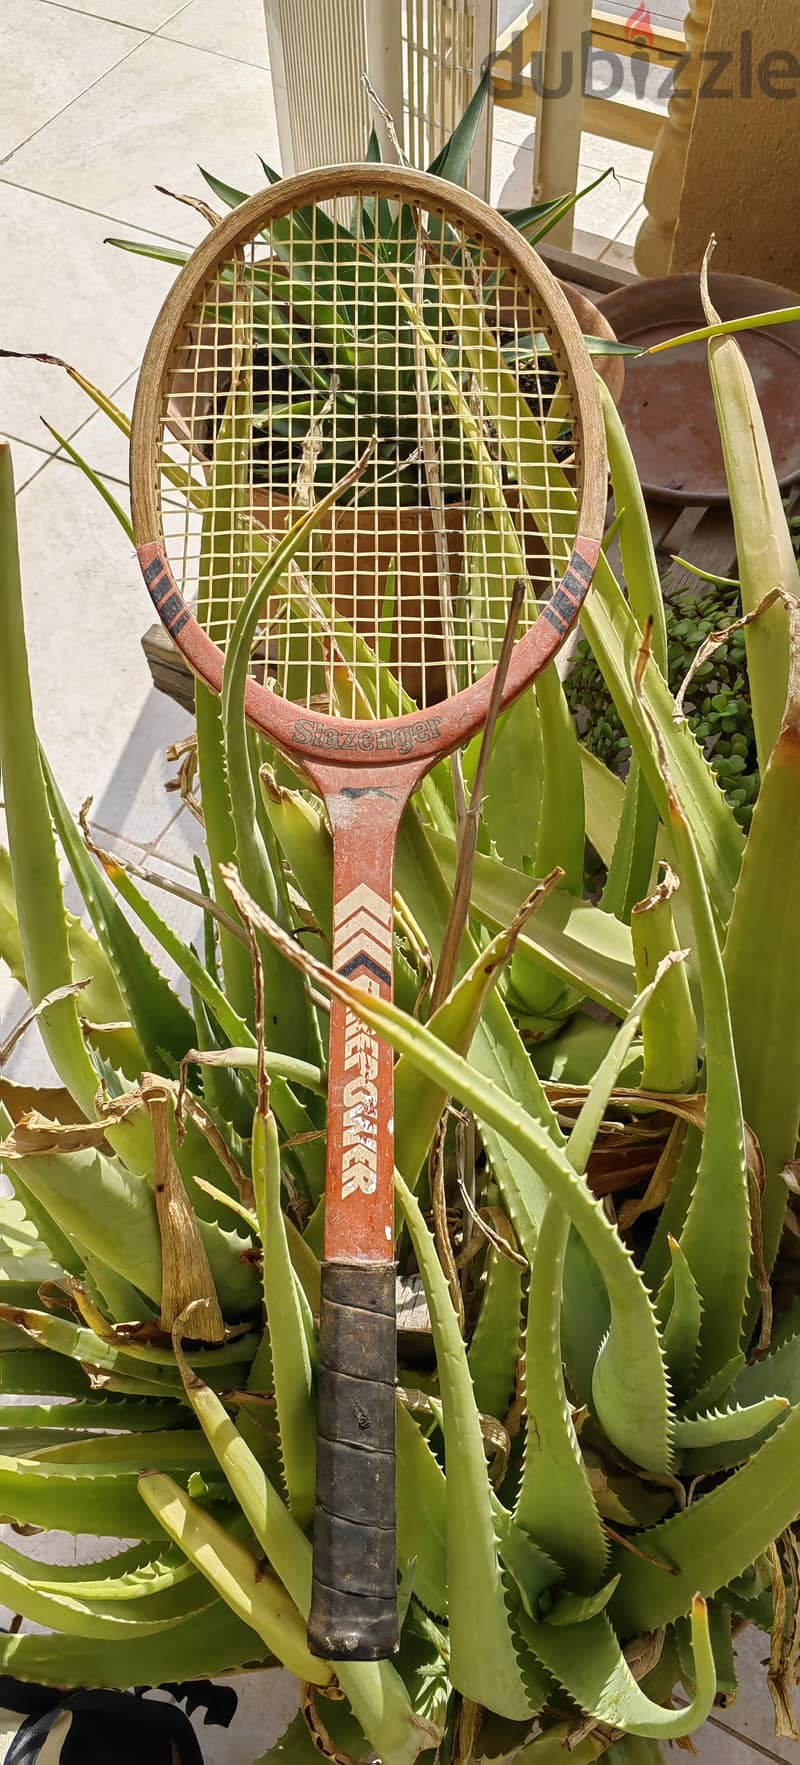 مضرب سكواتش / Squash racket 2